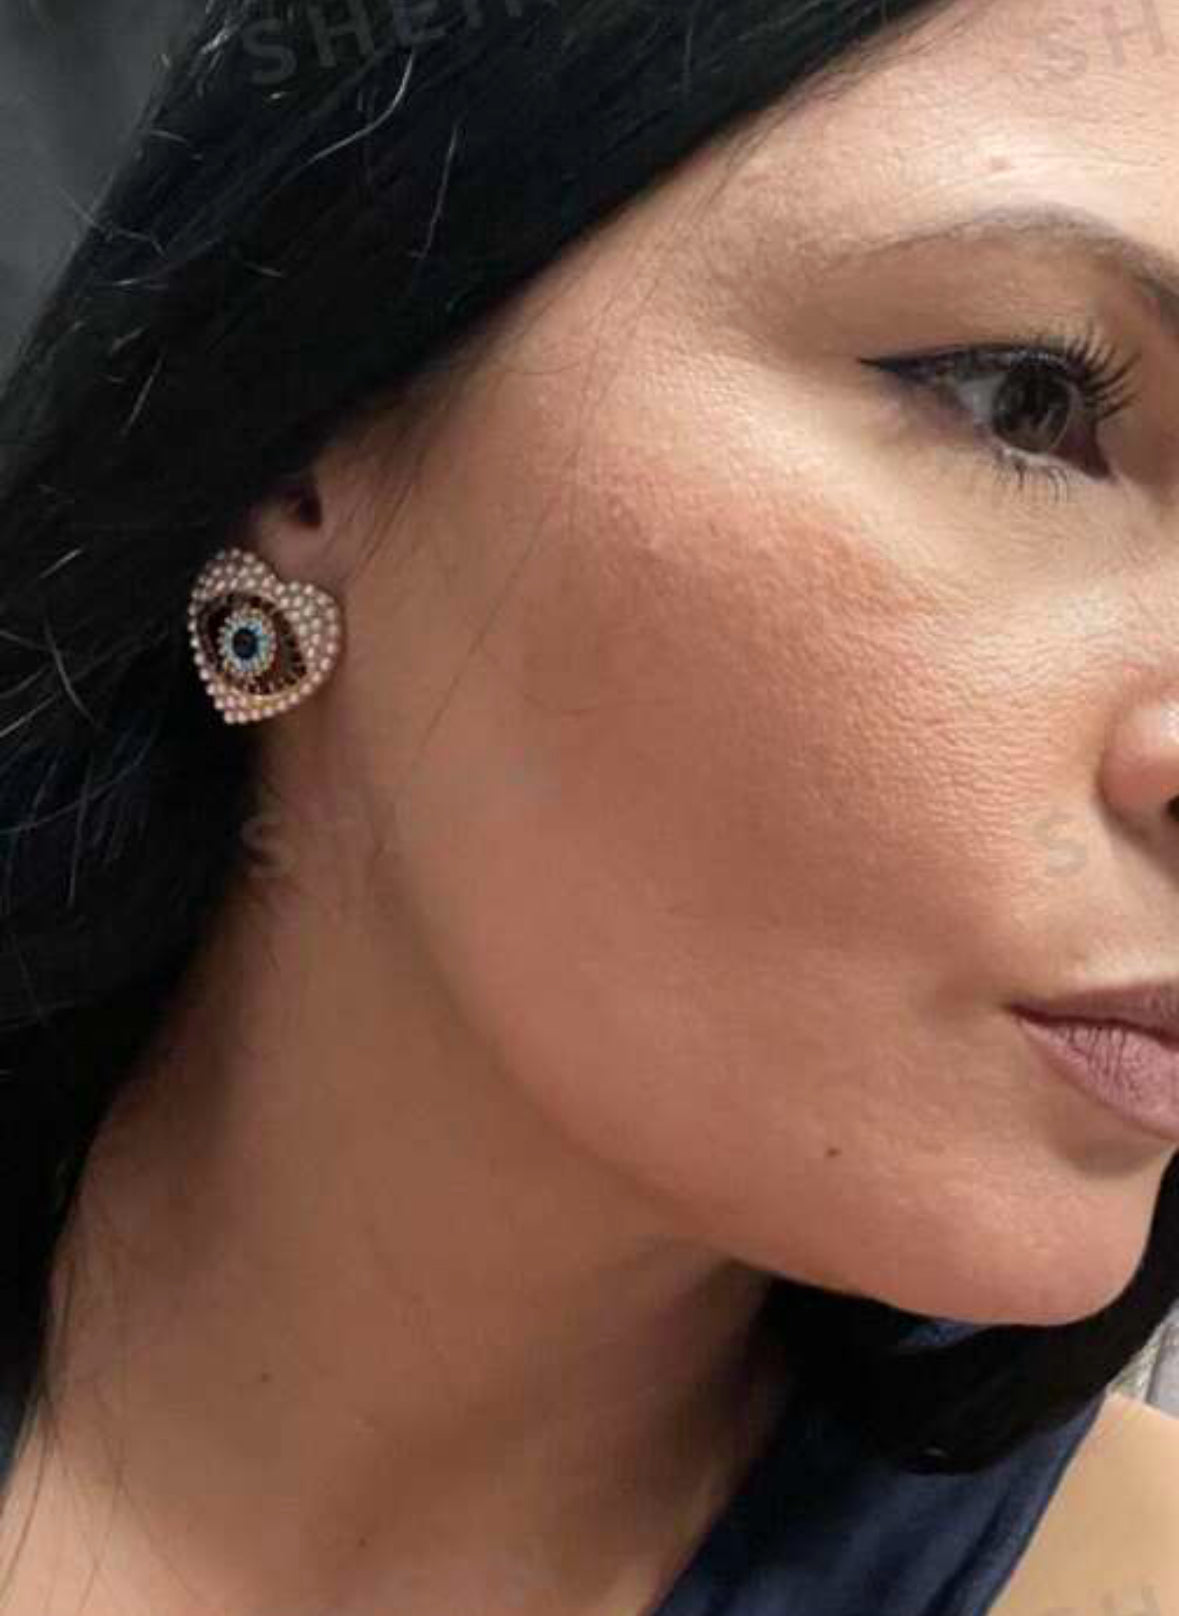 Right side of heart ❤️ shape earrings